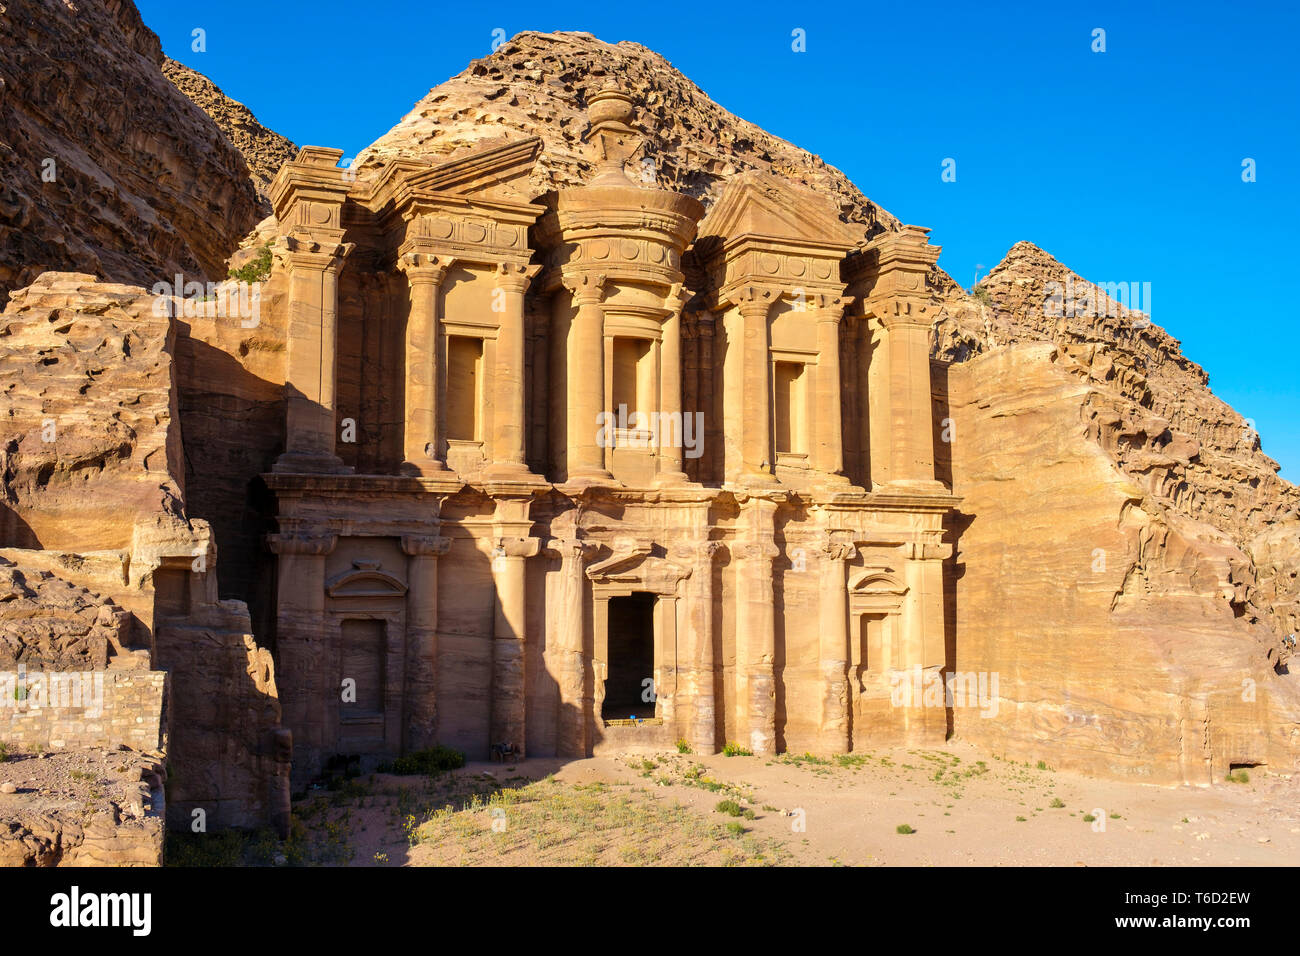 Jordania, Gobernación de Ma'an, Petra. Sitio de Patrimonio Mundial de la UNESCO. El Monasterio Ad-Deir, tallada en piedra arenisca en la ladera del acantilado. Foto de stock